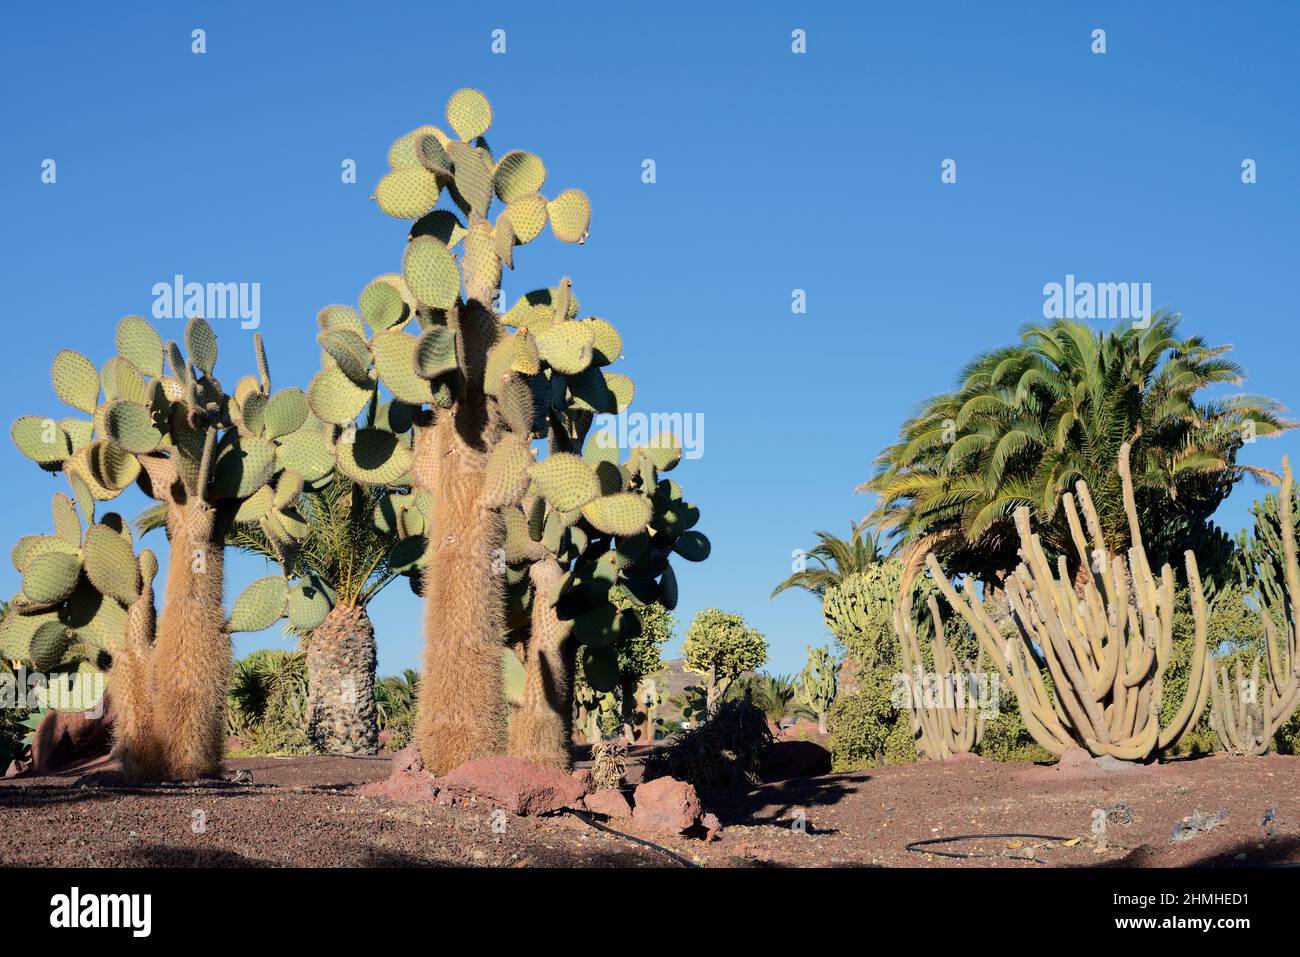 Galapagos-Kakteen (Opuntia galapageia), Kakteen und Palmen im Garten, Fuerteventura, Kanarische Inseln, Spanien Stockfoto